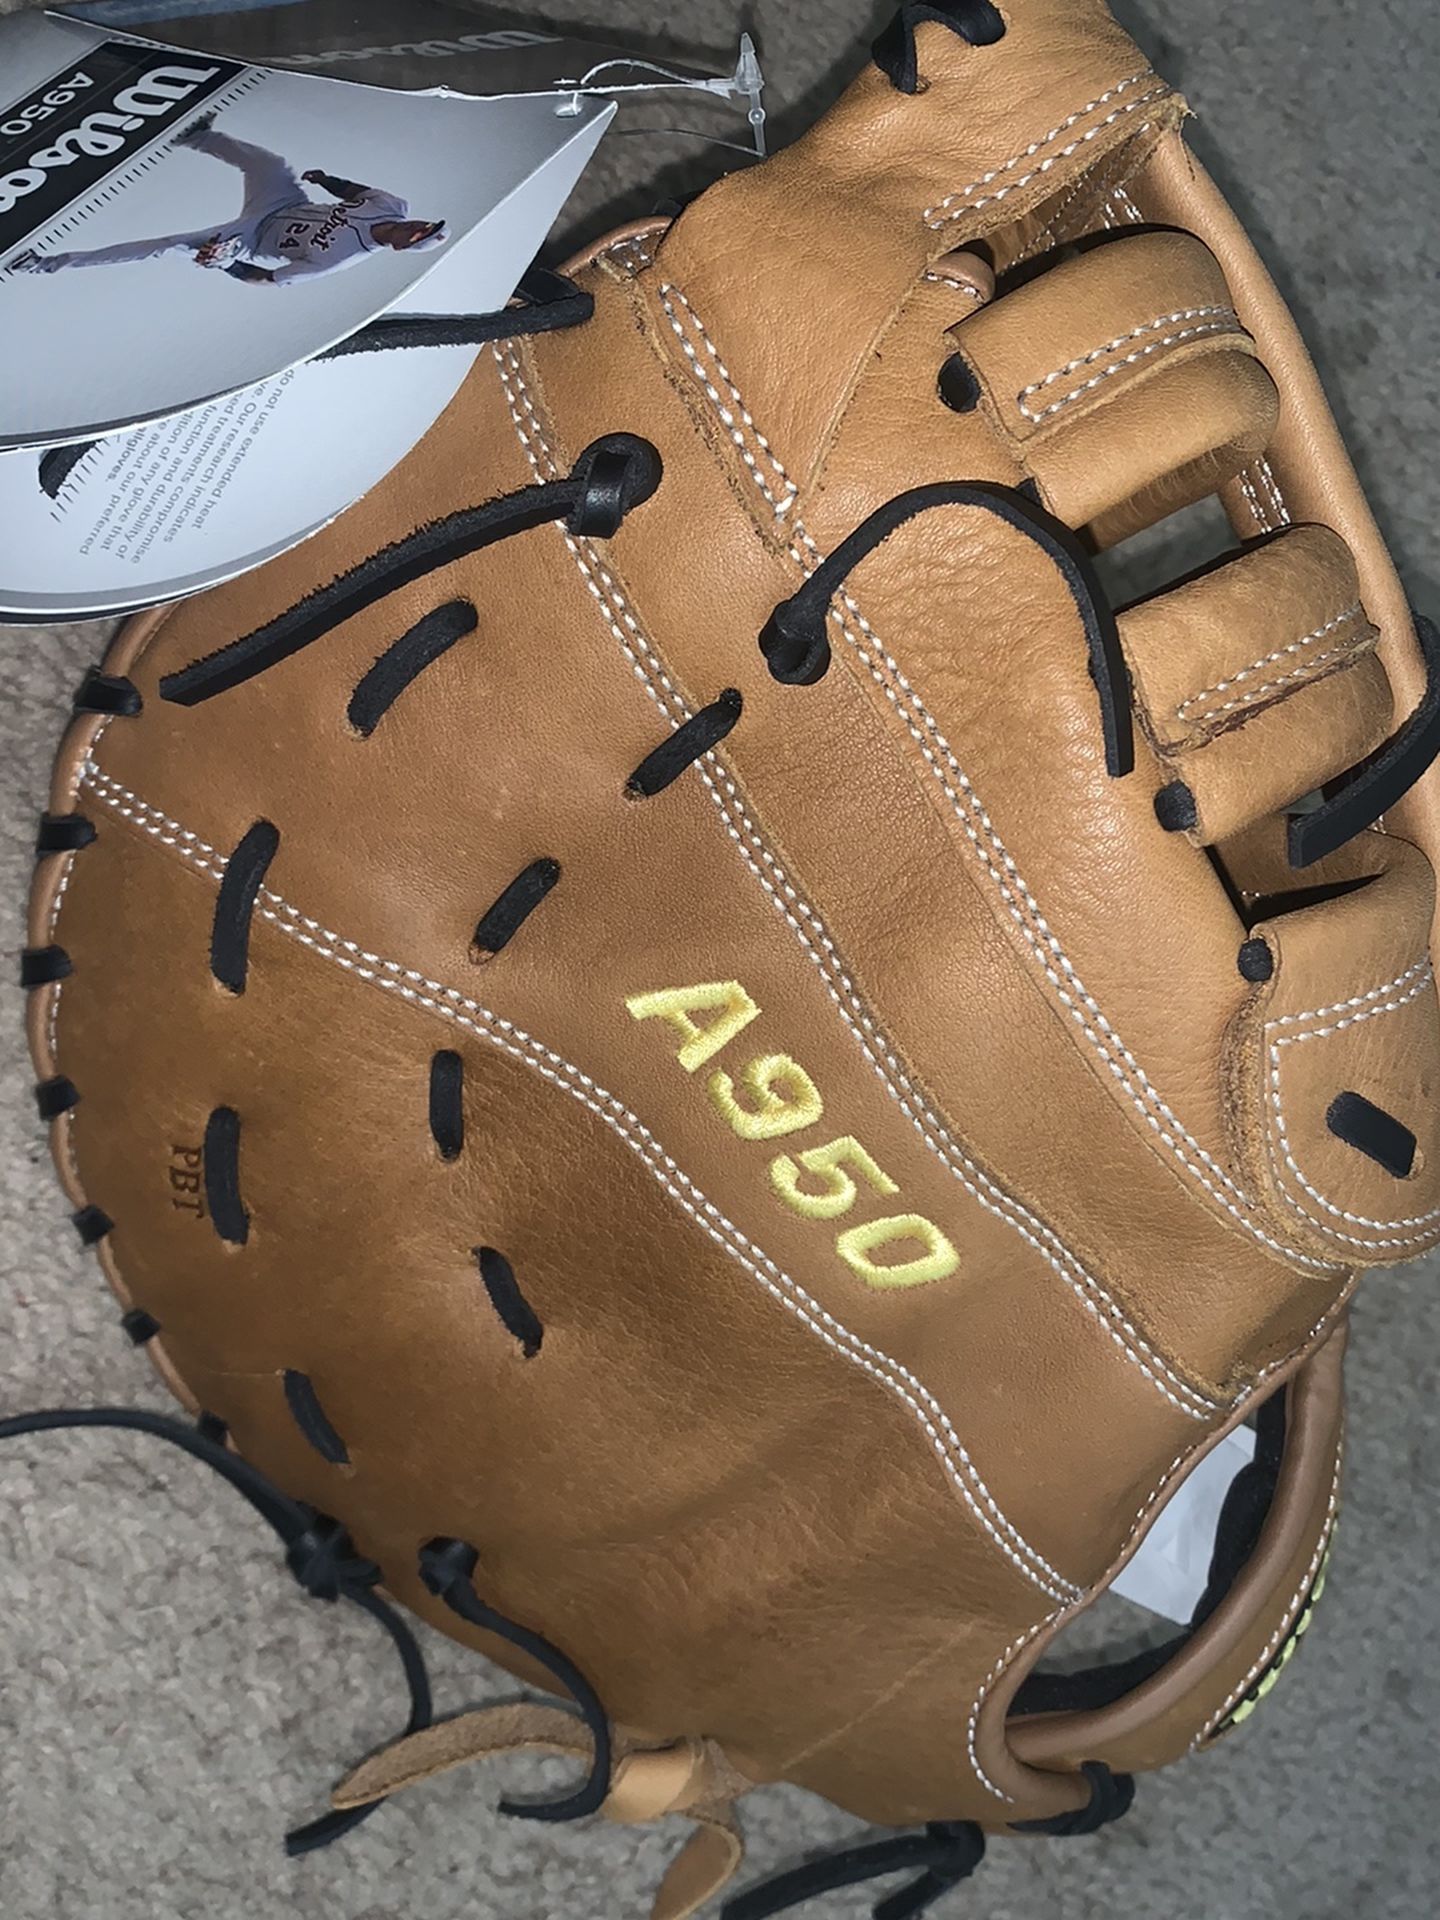 Glove Wilson A950 First Base New 